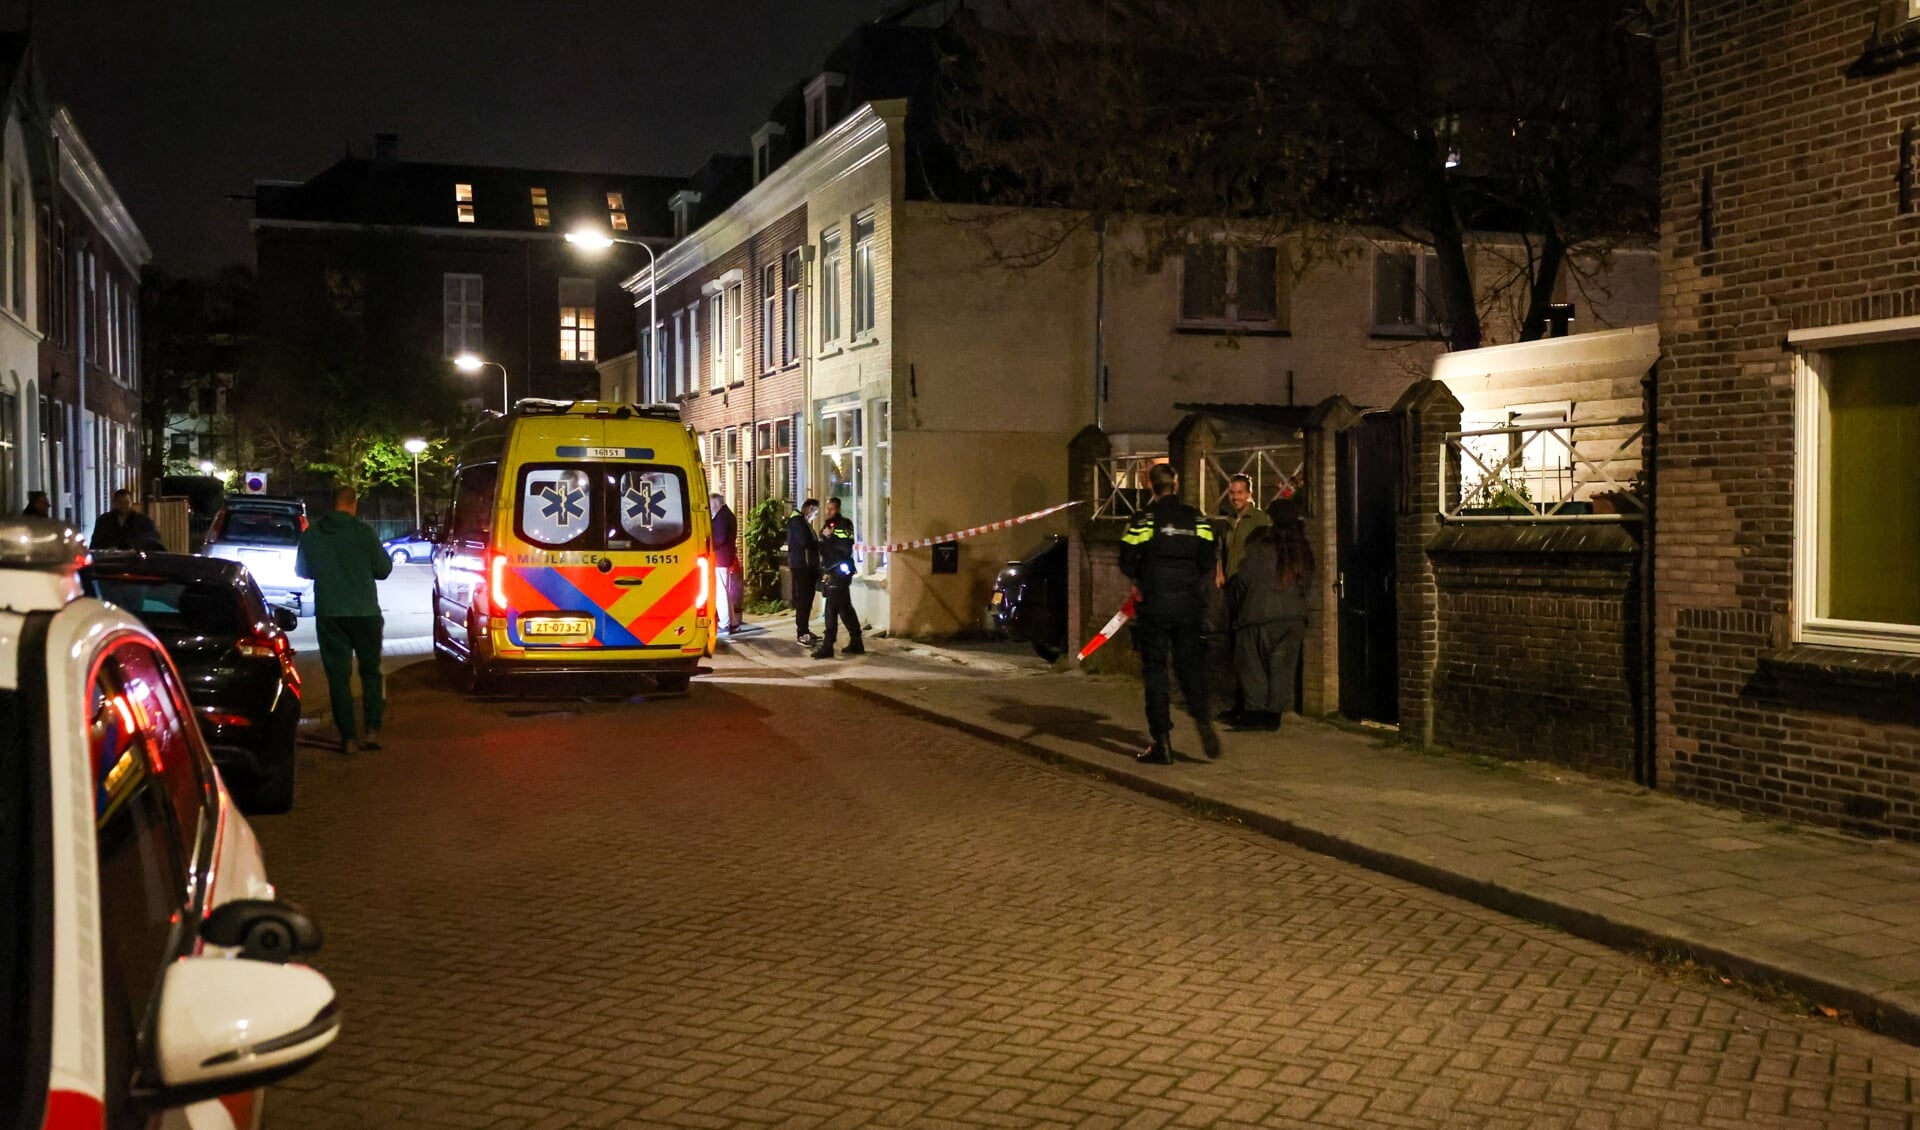 Aan de Adriaan Vlackstraat vond gisteravond rond 23.00 een inbraak met geweld plaats. Eén persoon raakte daarbij gewond aan het hoofd. 